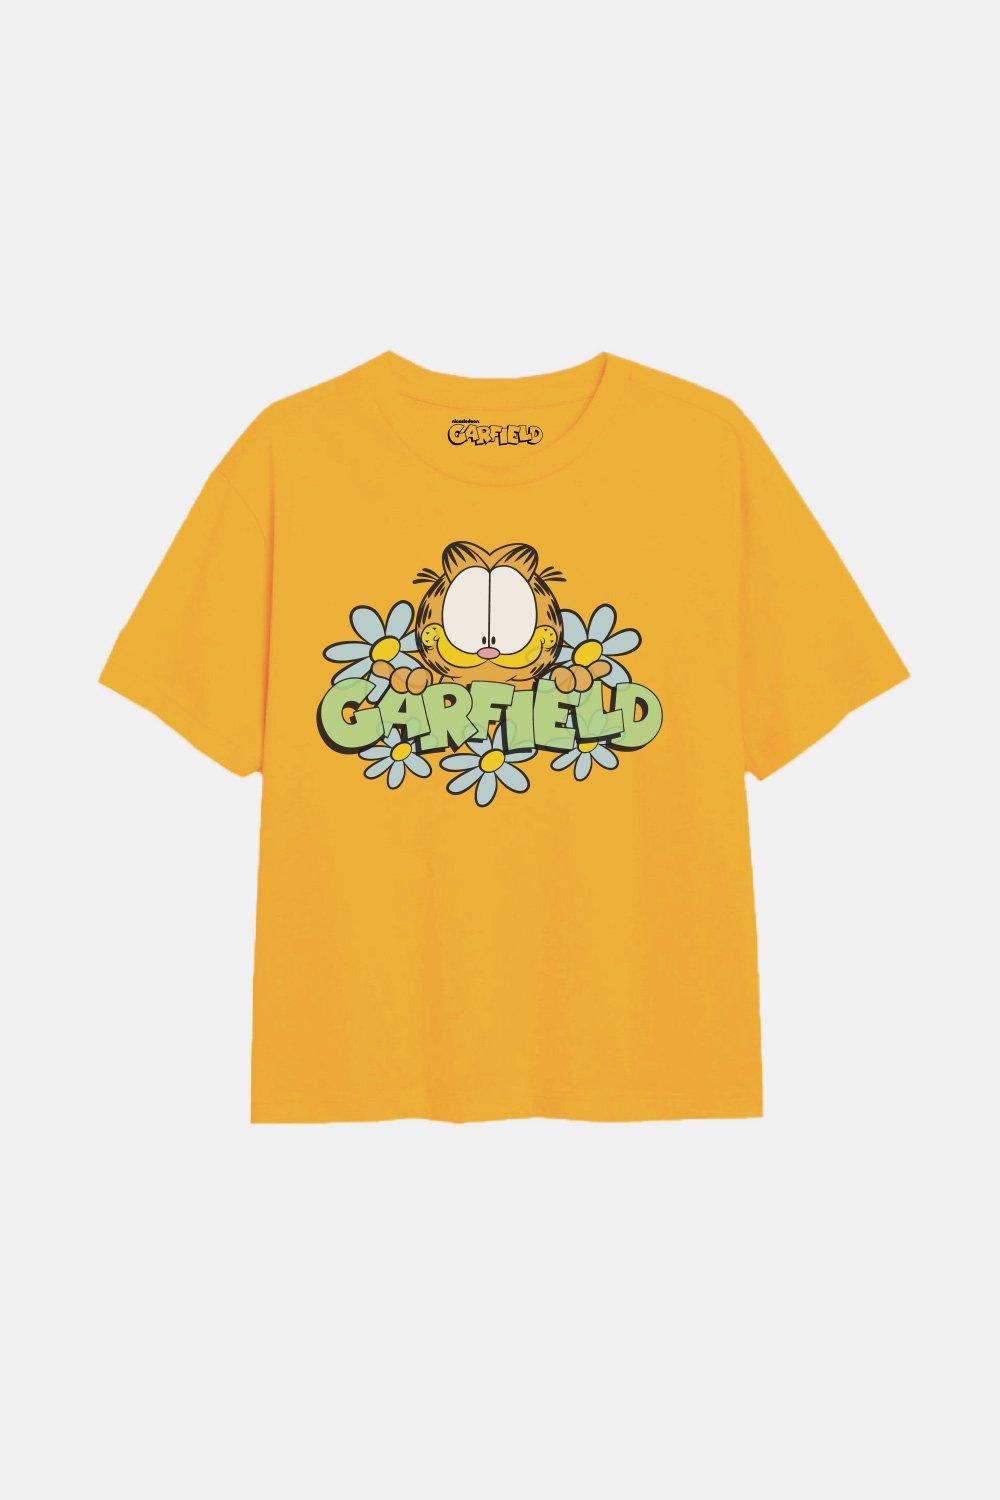 Футболка для девочек Flower Power Garfield, желтый